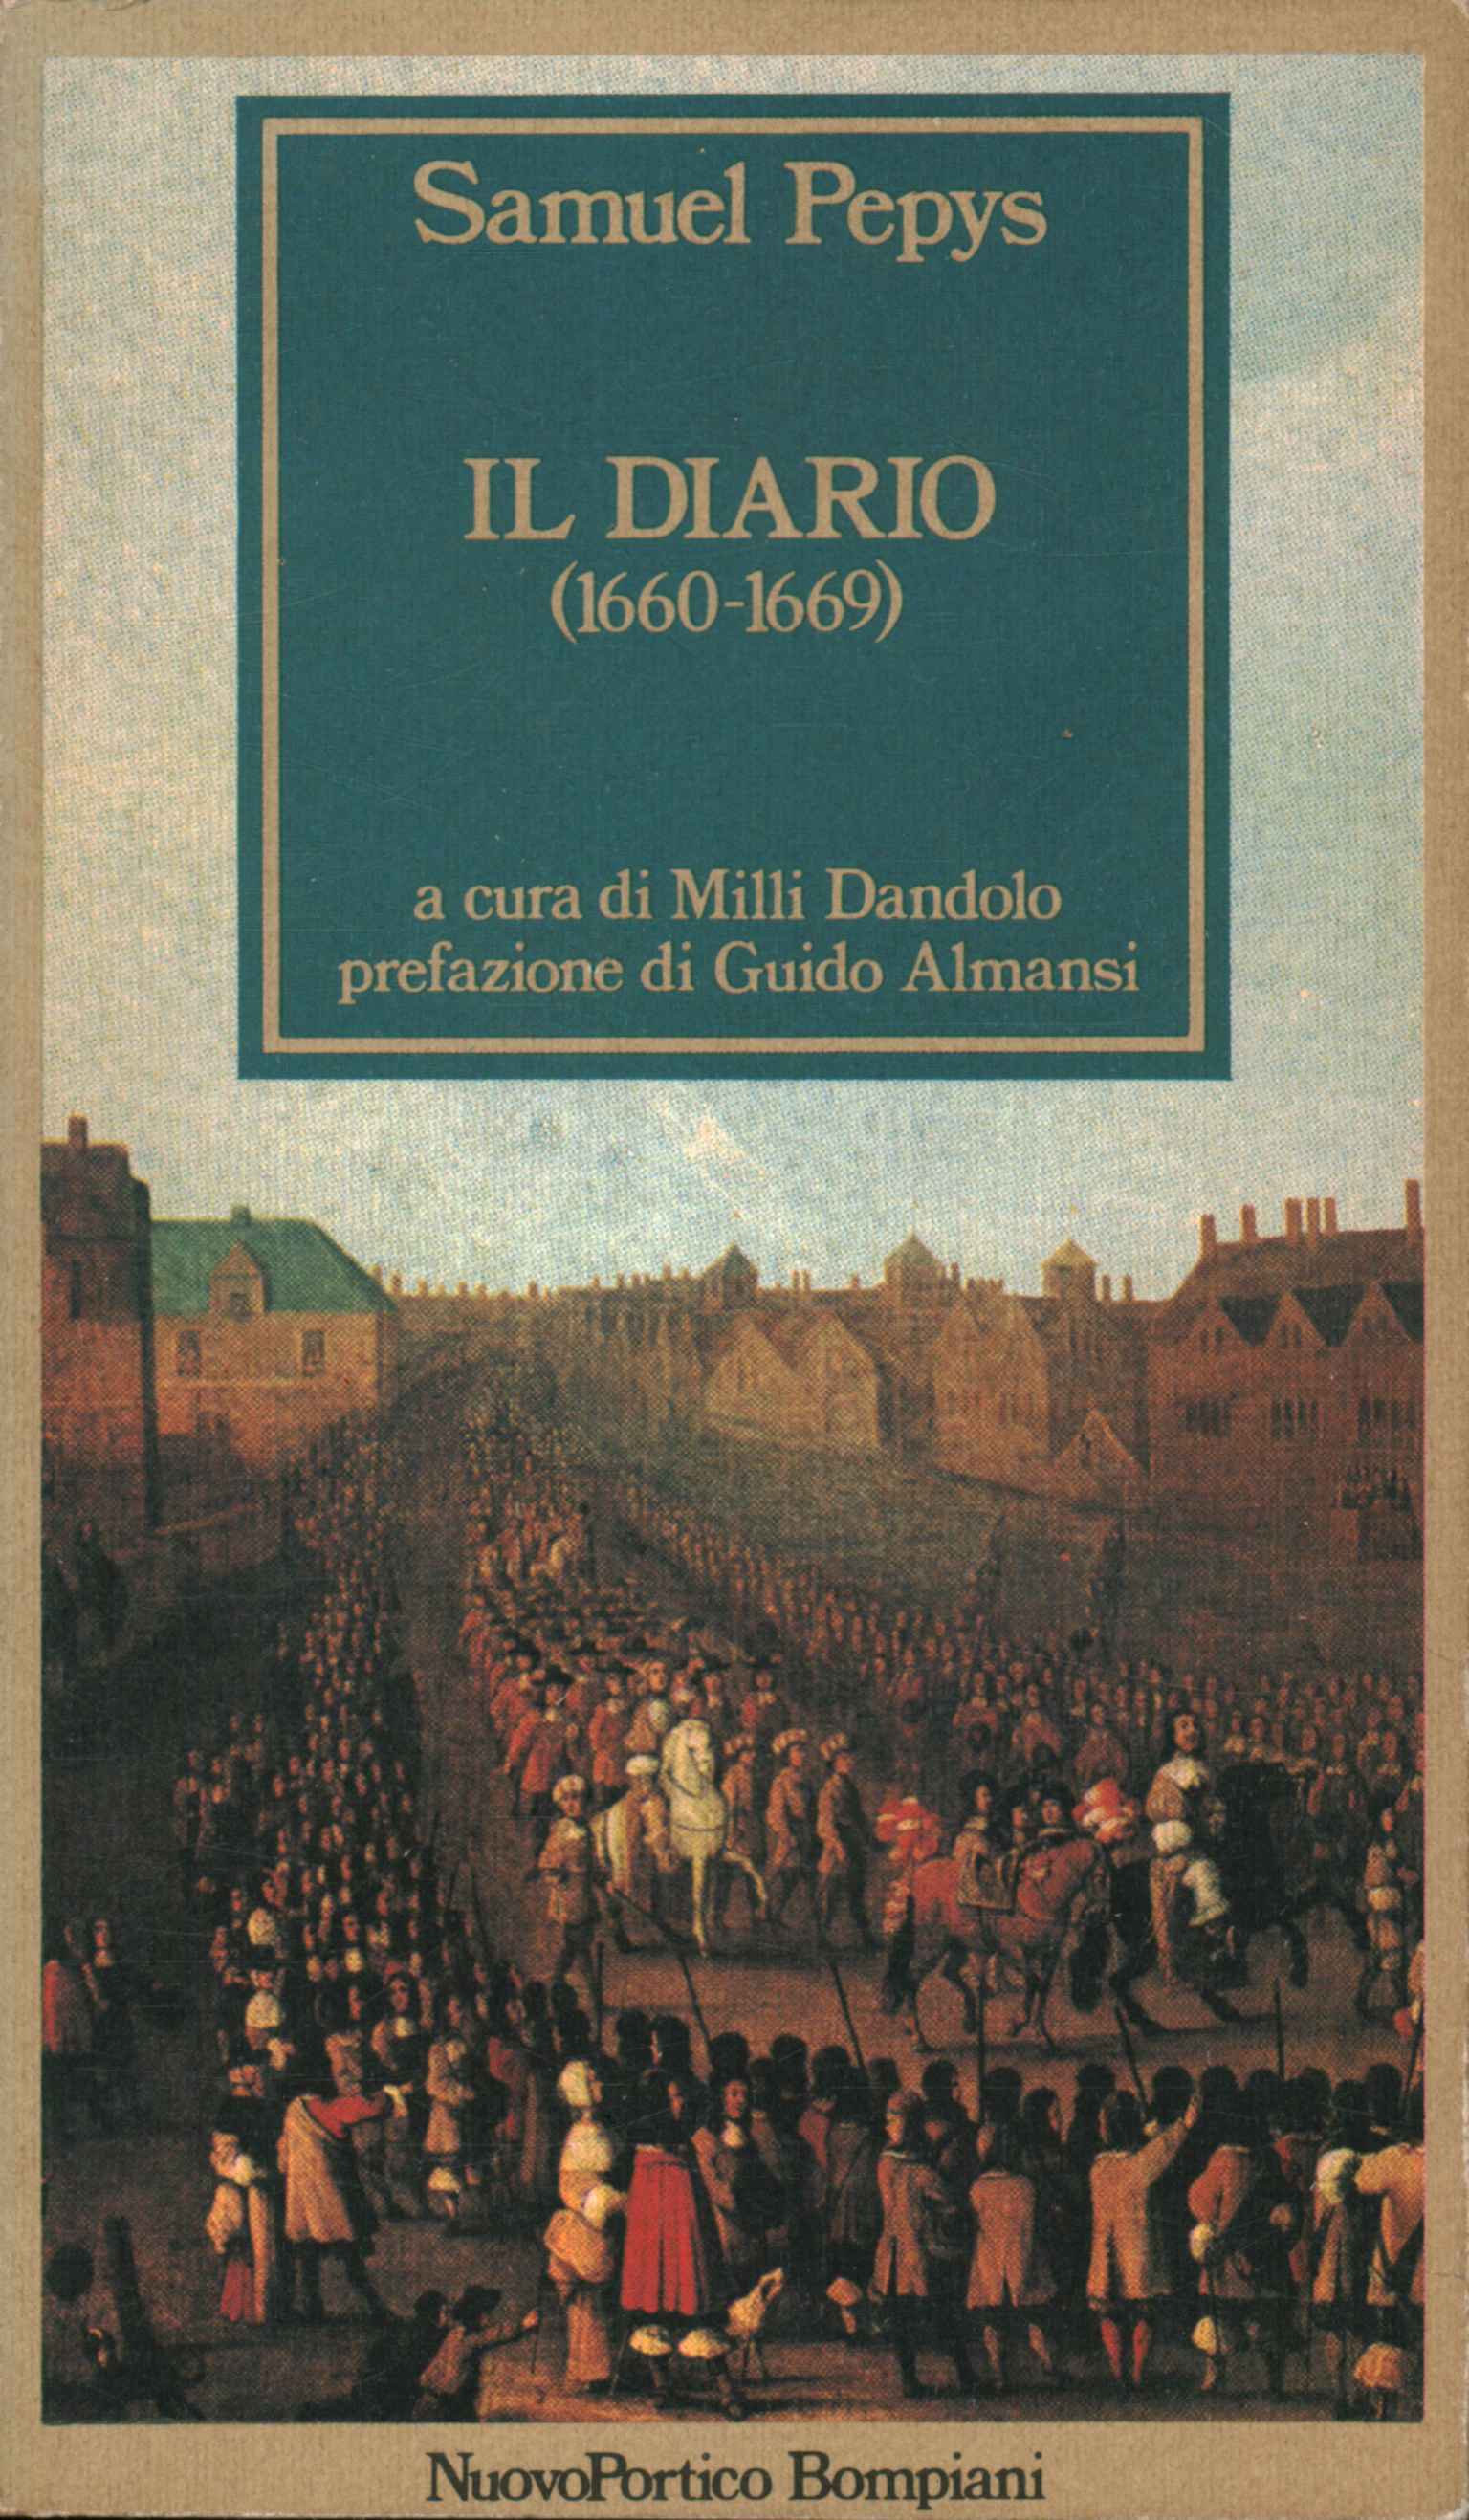 El diario (1660-69)